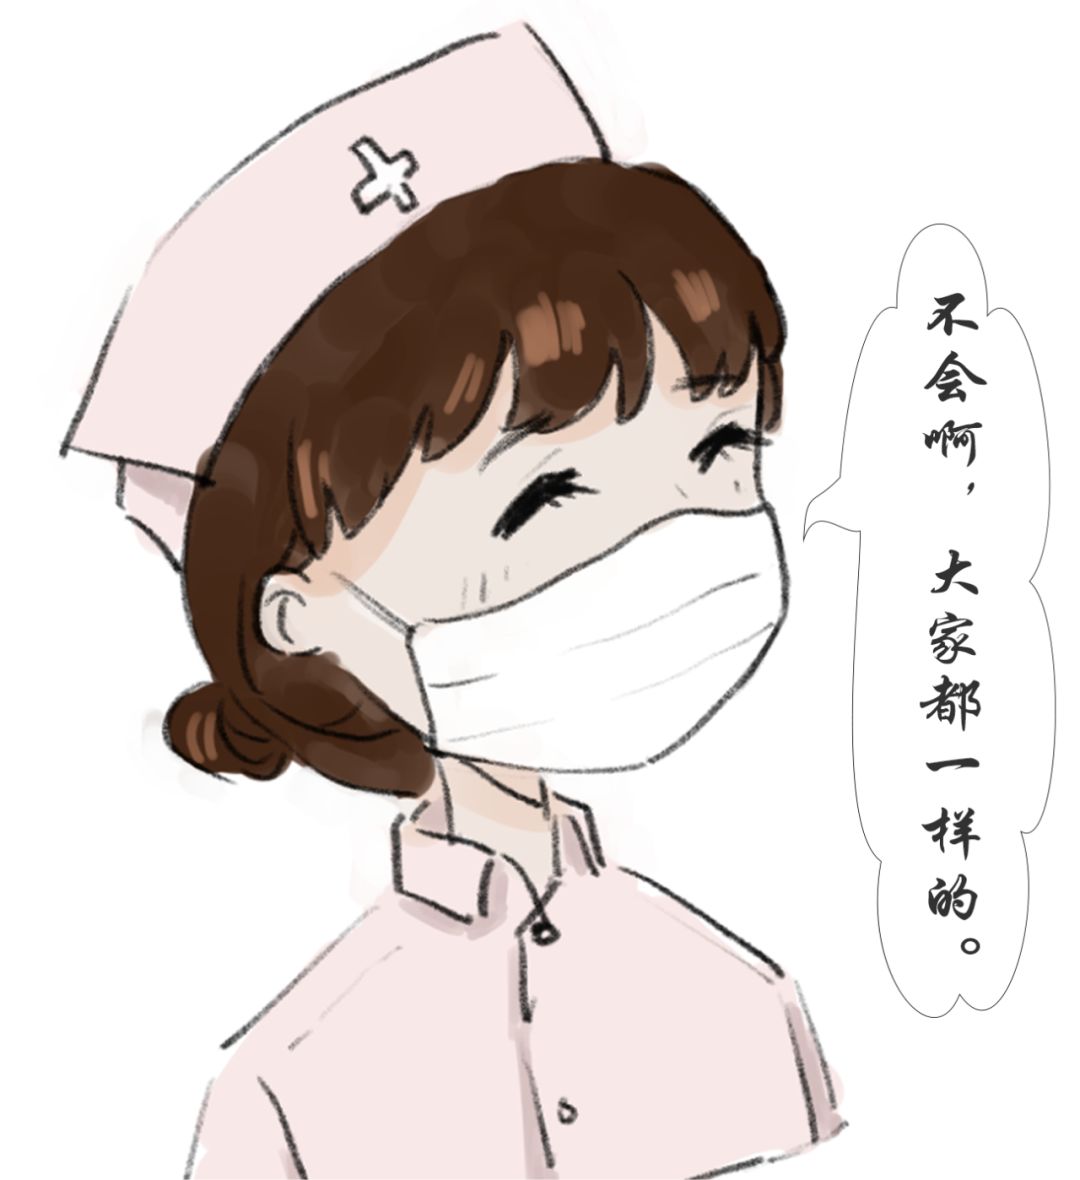 疫情卡通Q版 护士图片